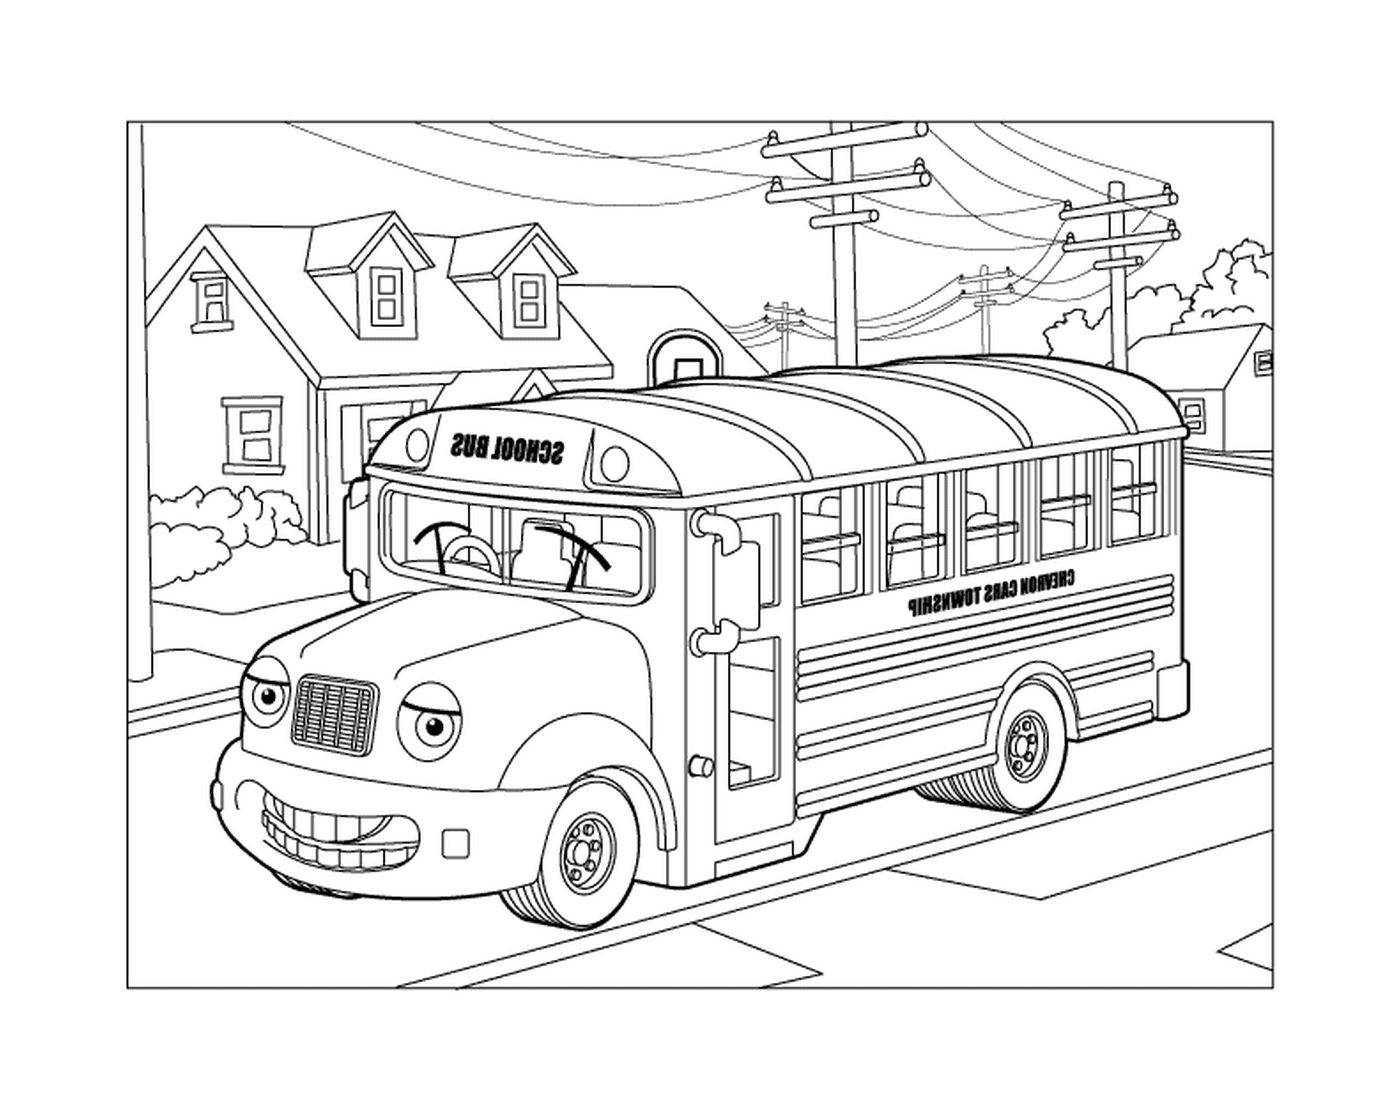  Школьный автобус едет по улице 